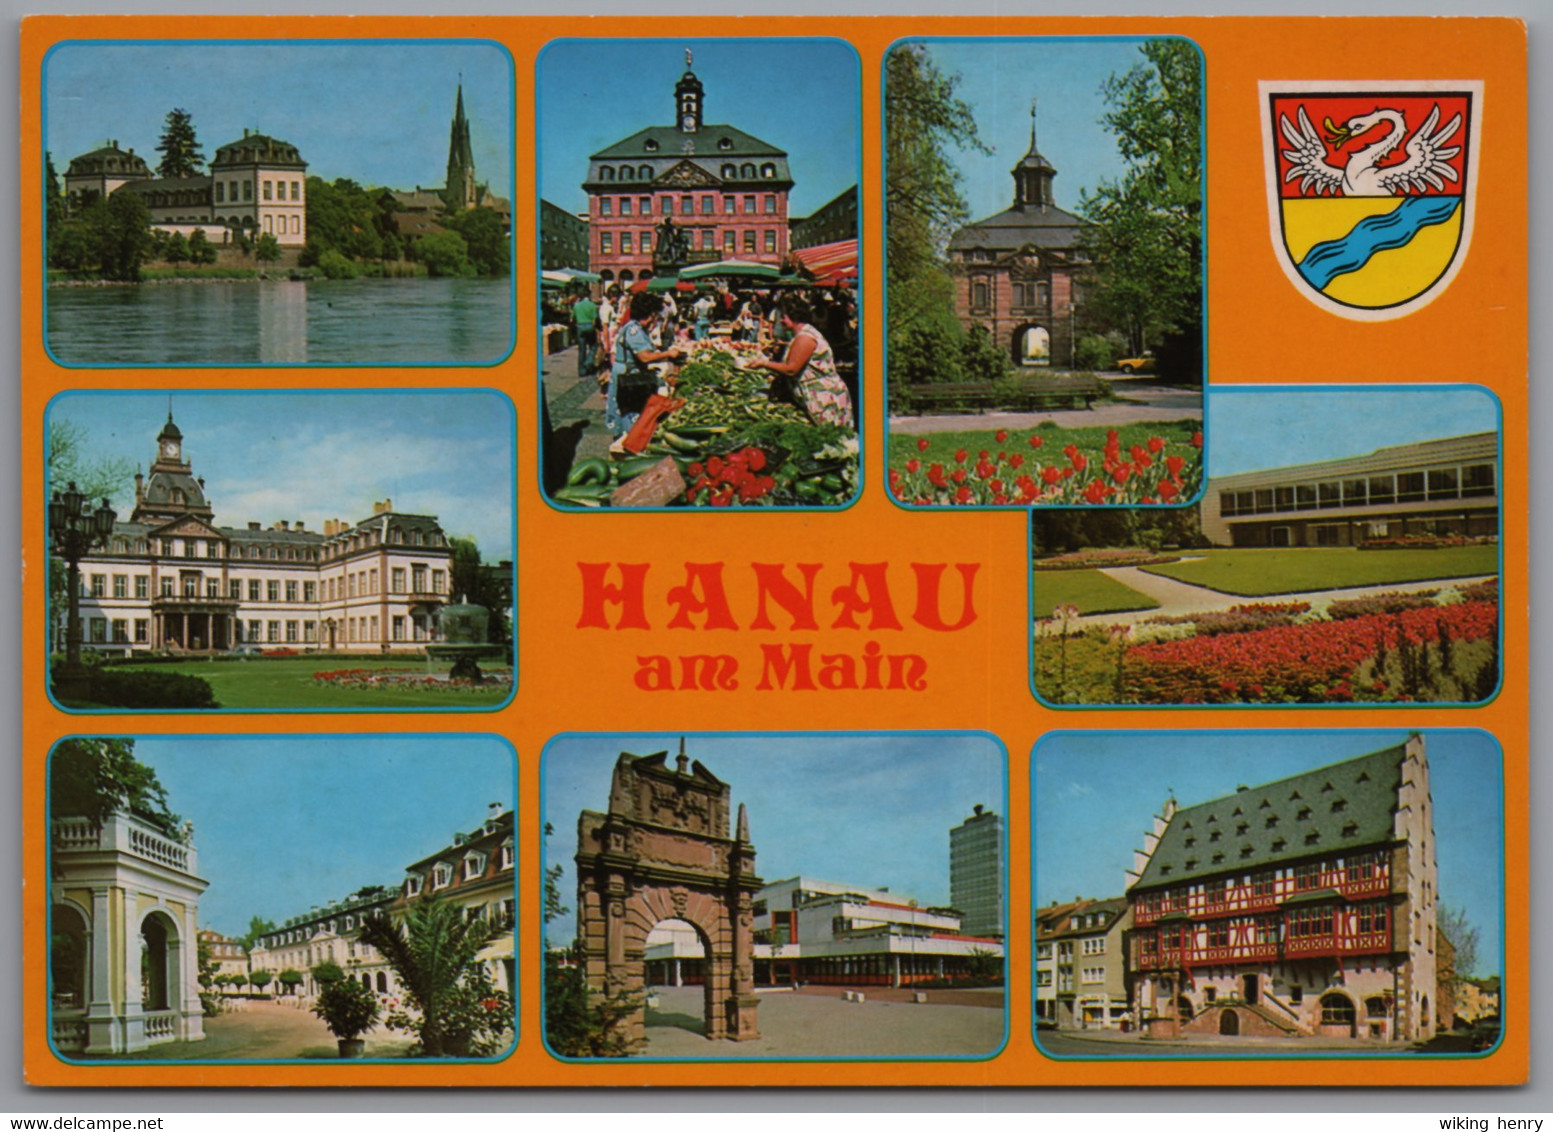 Hanau - Mehrbildkarte 12 - Hanau